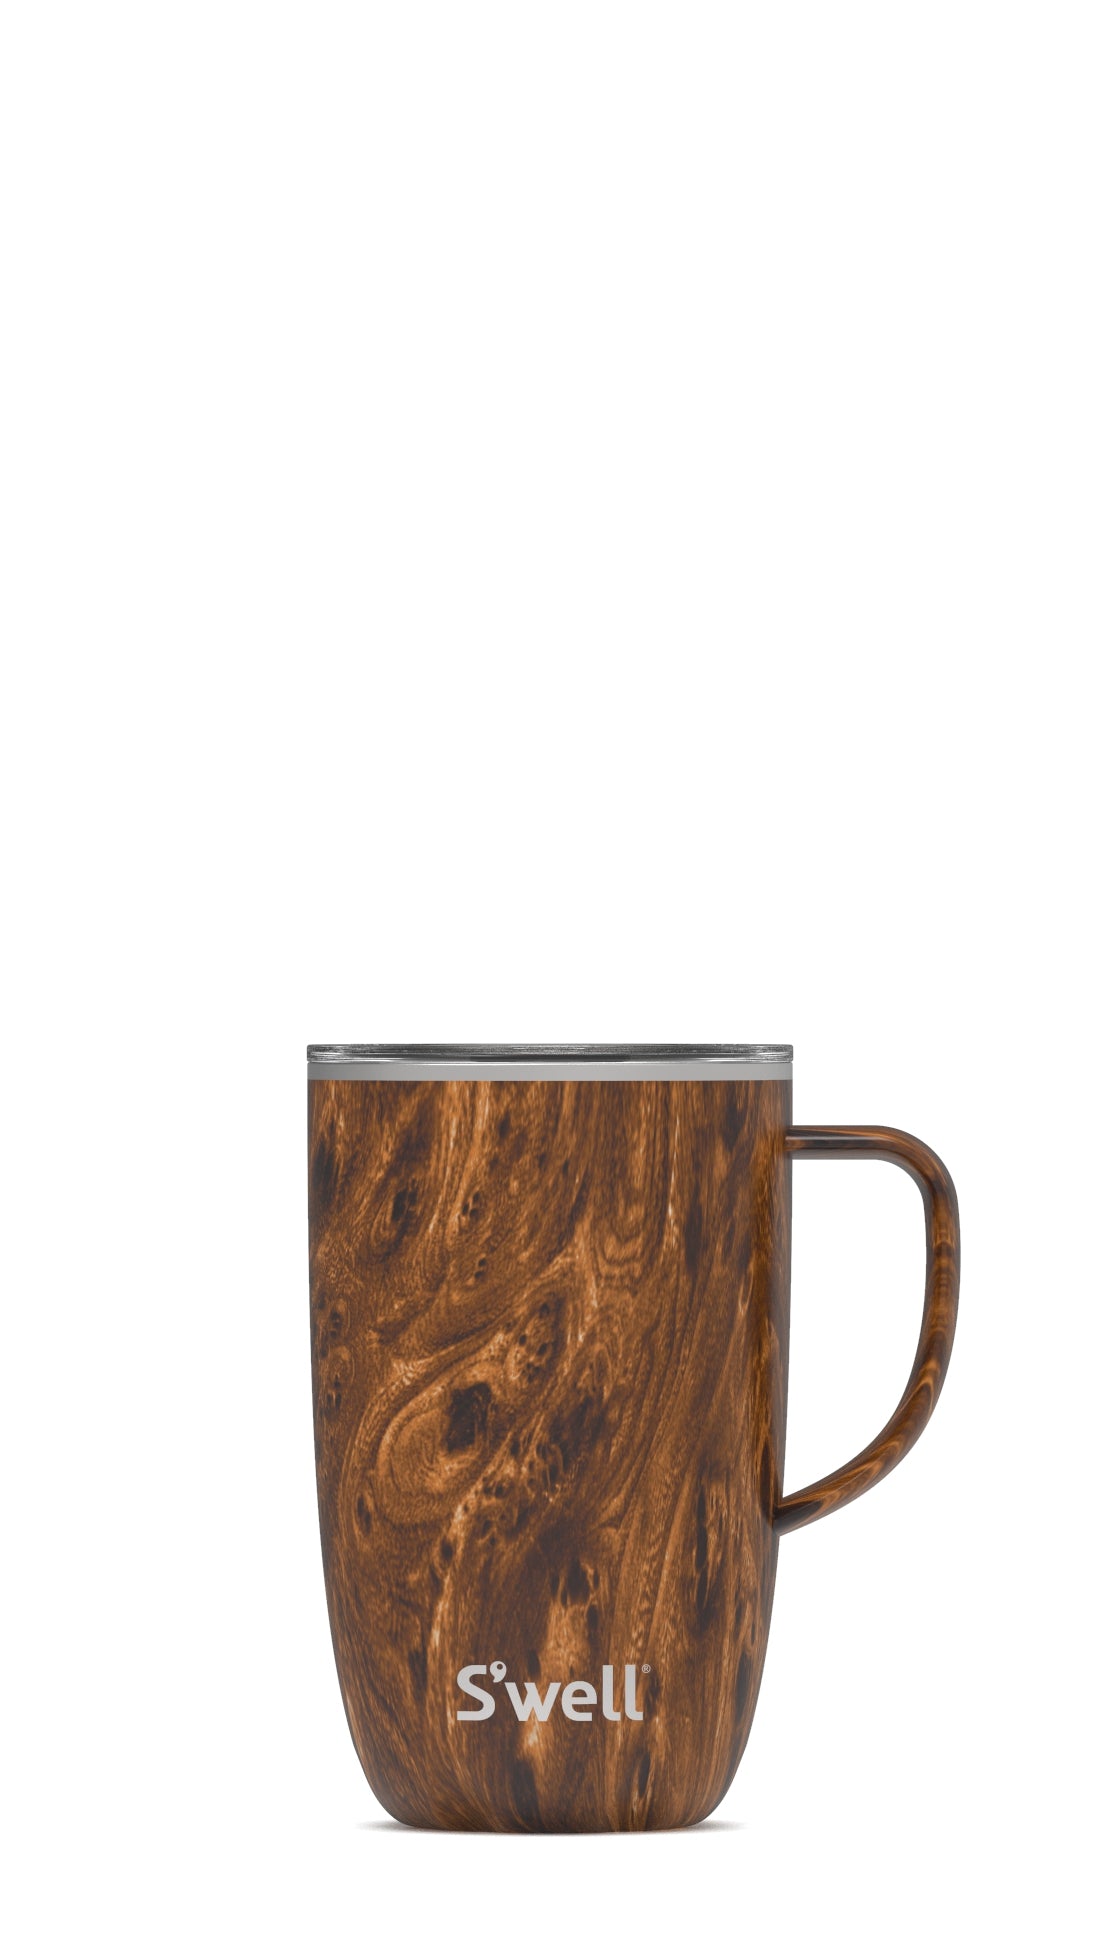 Teakwood Mug With Handle 470ml